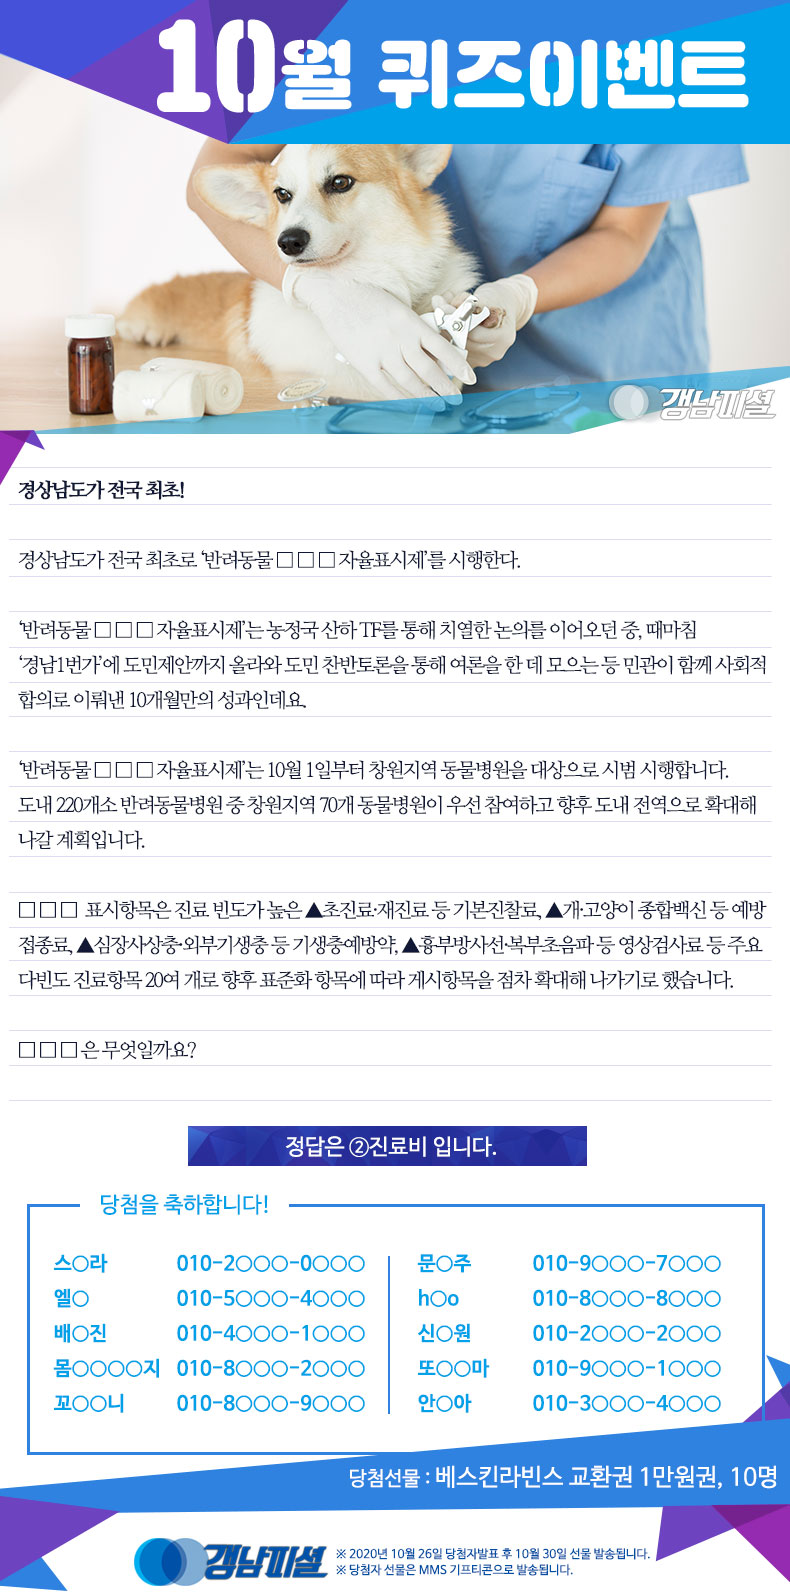 경남-인터넷뉴스-10월이벤트_당첨자-발표